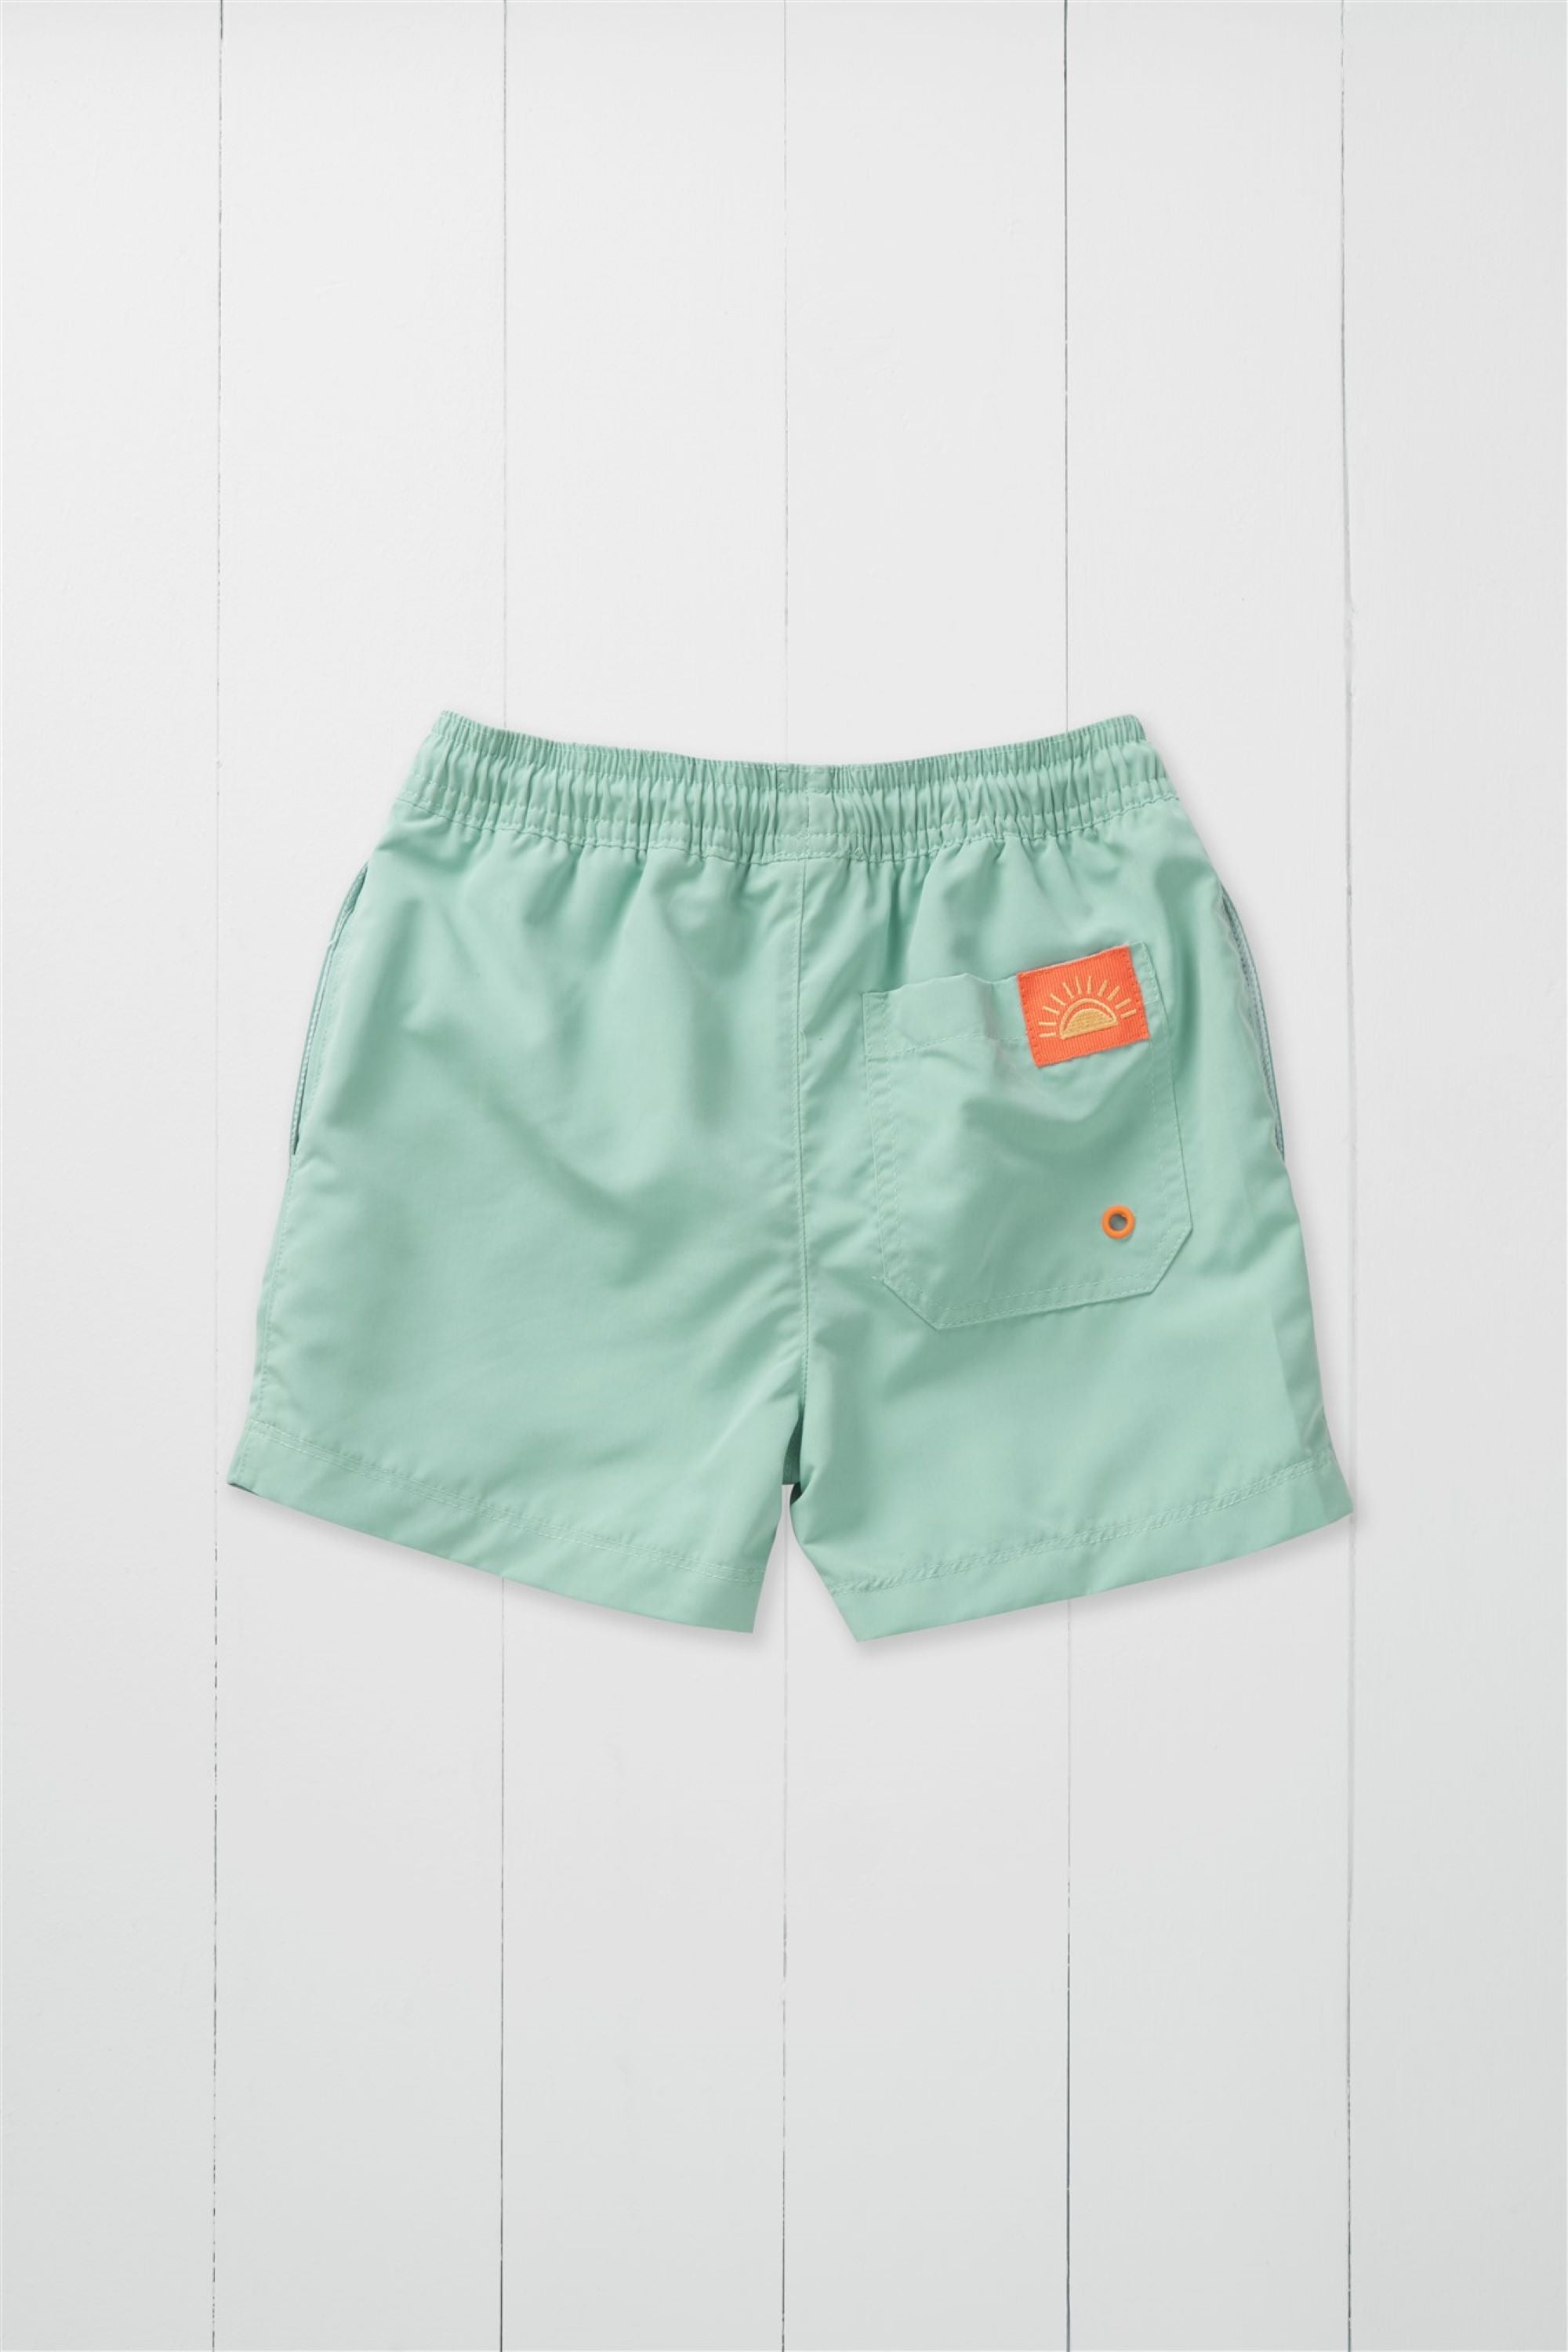 Pistachio Swim Shorts